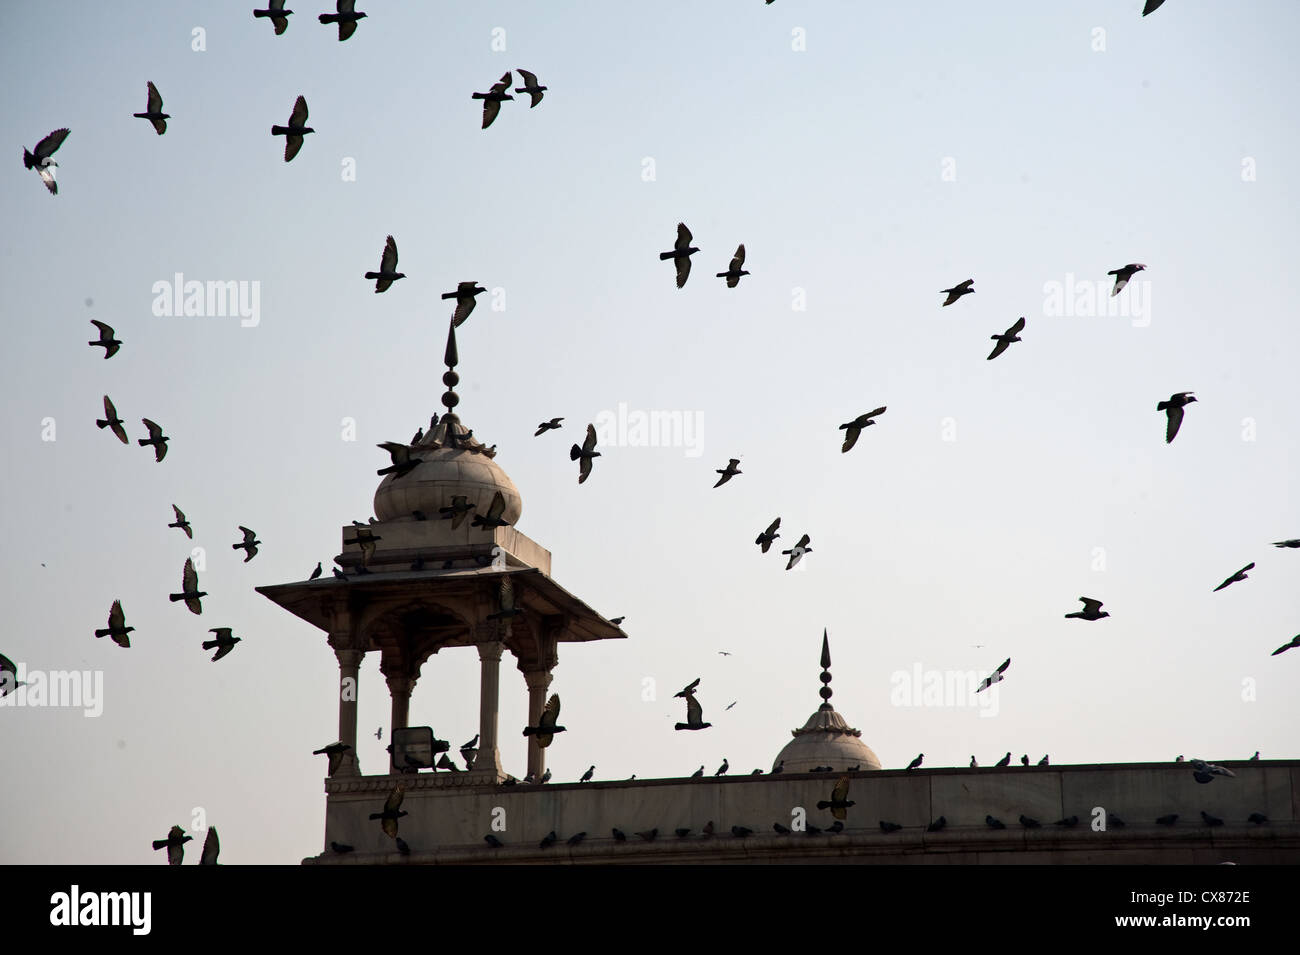 Un intero gregge dei piccioni sulla sommità dei bastioni del Forte Rosso a Nuova Delhi, India. Il gregge tende a muoversi in un gruppo. Foto Stock